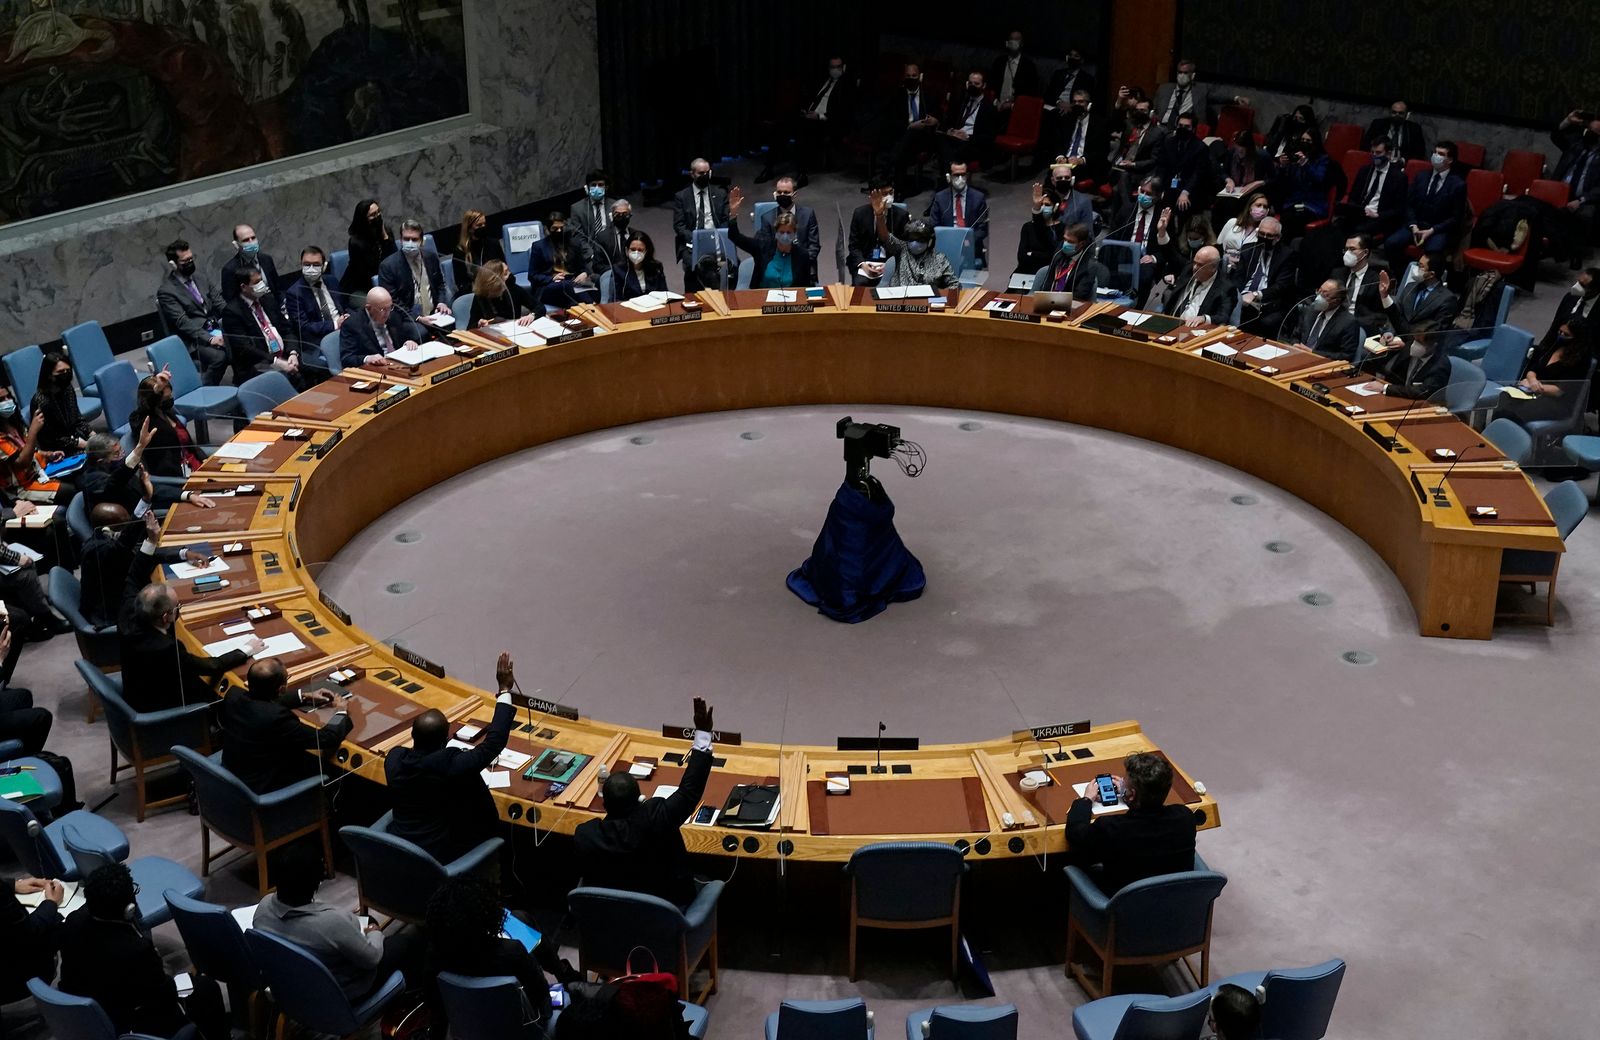 جانب من جلسة مجلس الأمن الدولي للتصويت على مشروع قرار يدين الغزو الروسي لأوكرانيا ويدعو موسكو إلى سحب قواتها، نيويورك 25 فبراير 2022 - AFP